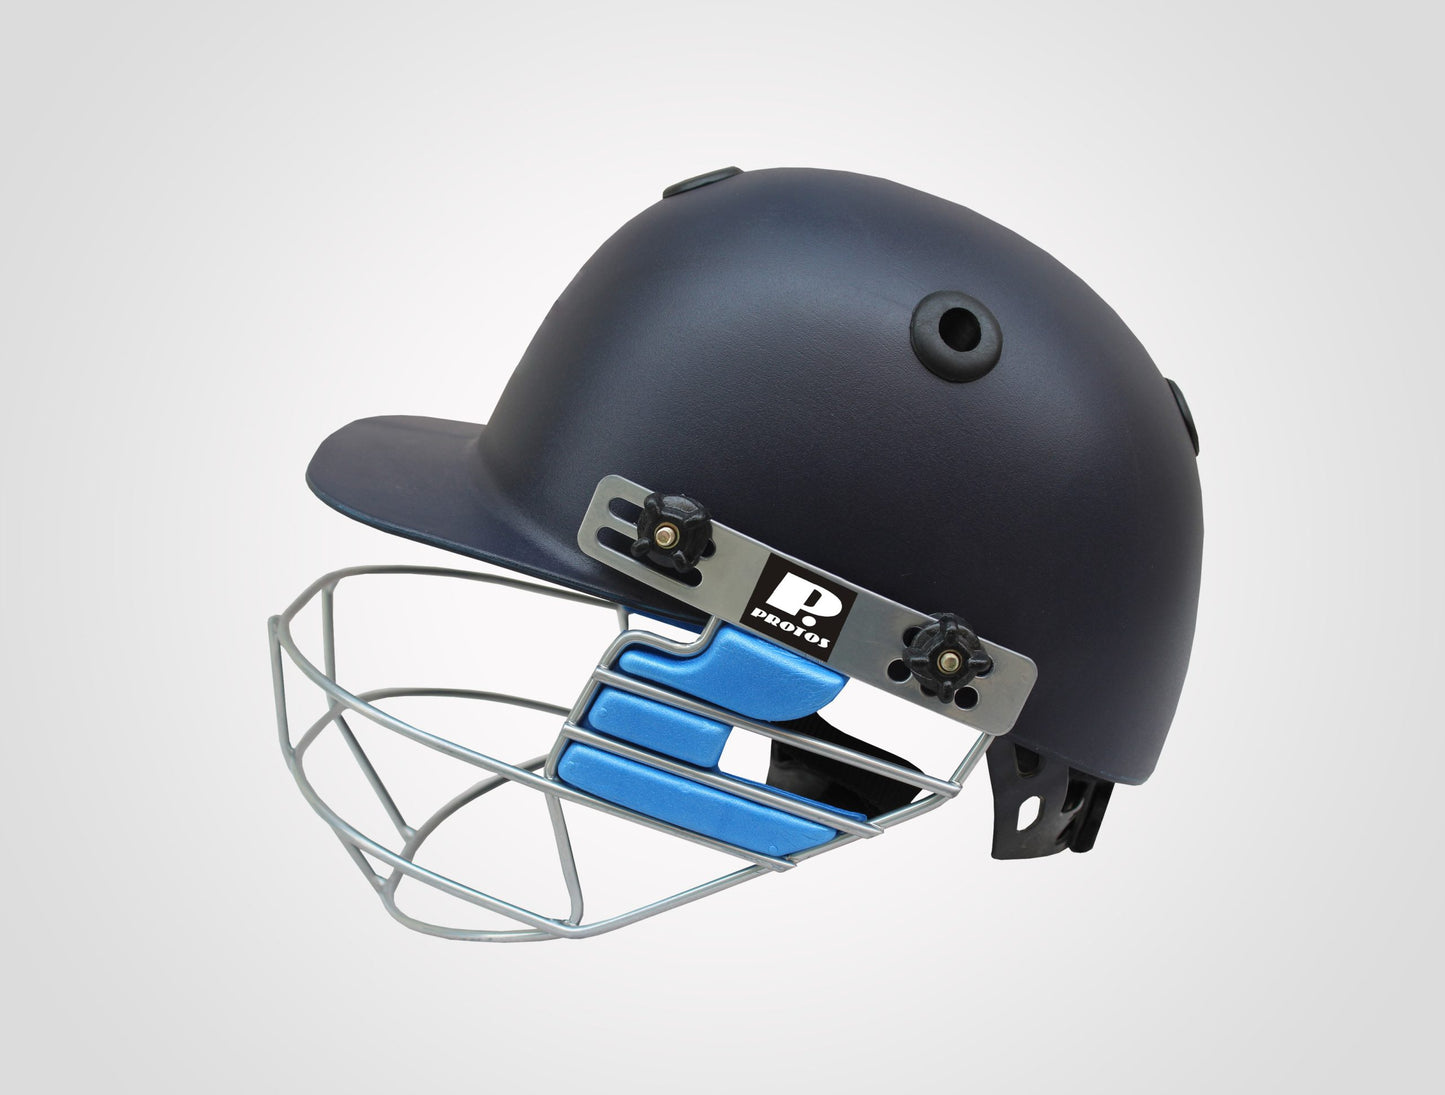 Protos Aero Pro Cricket Helmet